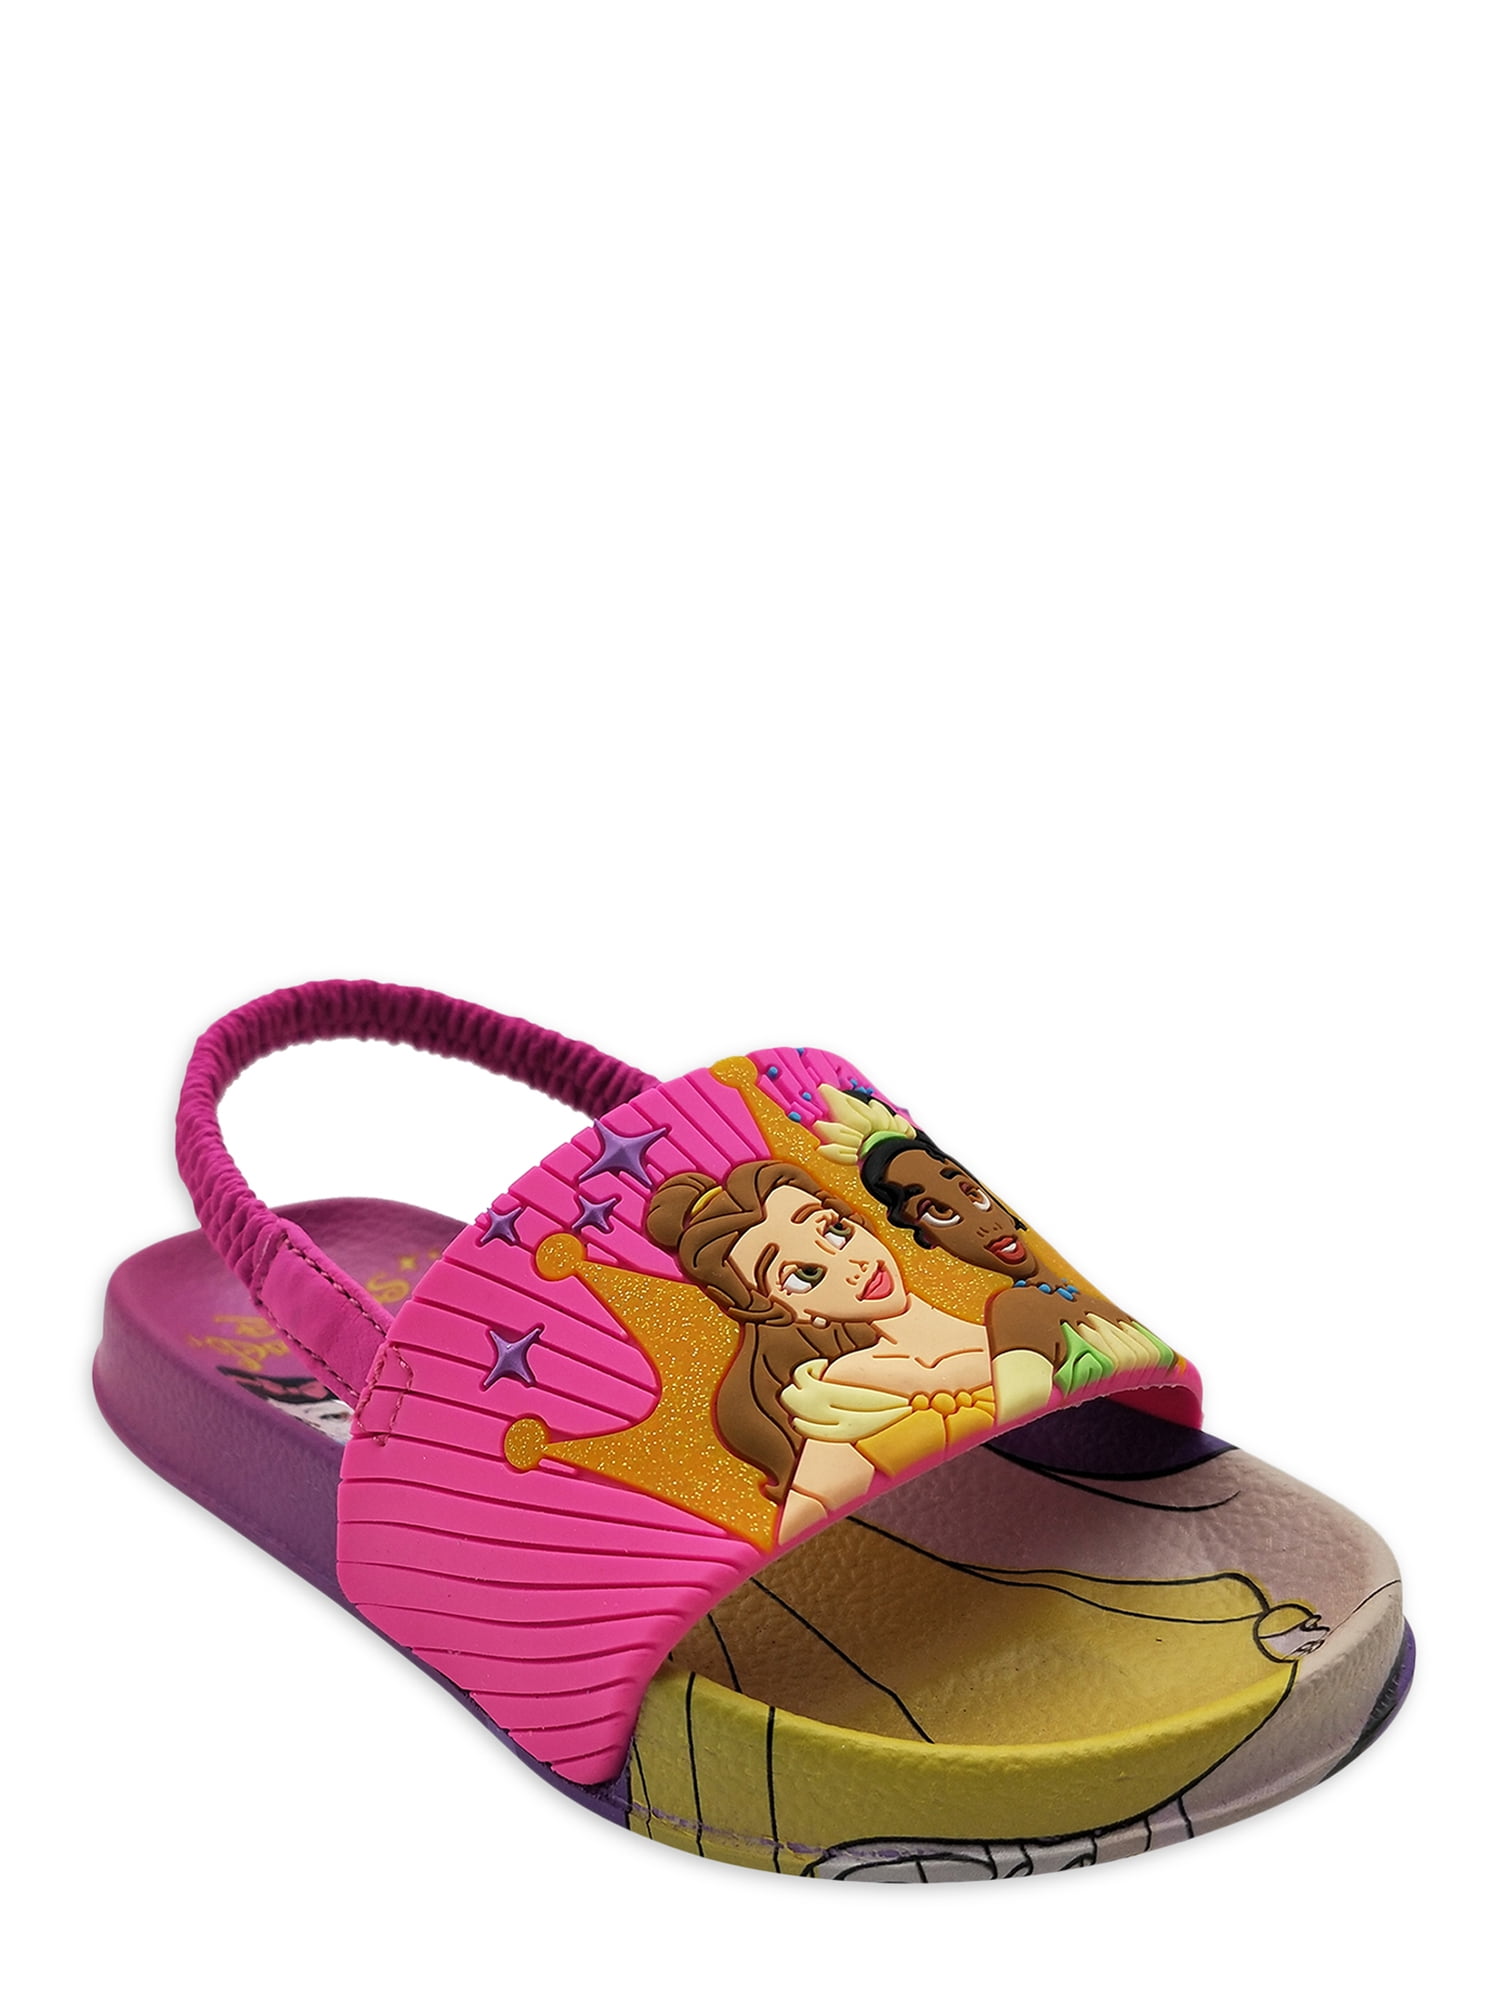 Girls Disney Princess Belle Glittery Summer Garden Beach  Jelly Shoes Sandals 